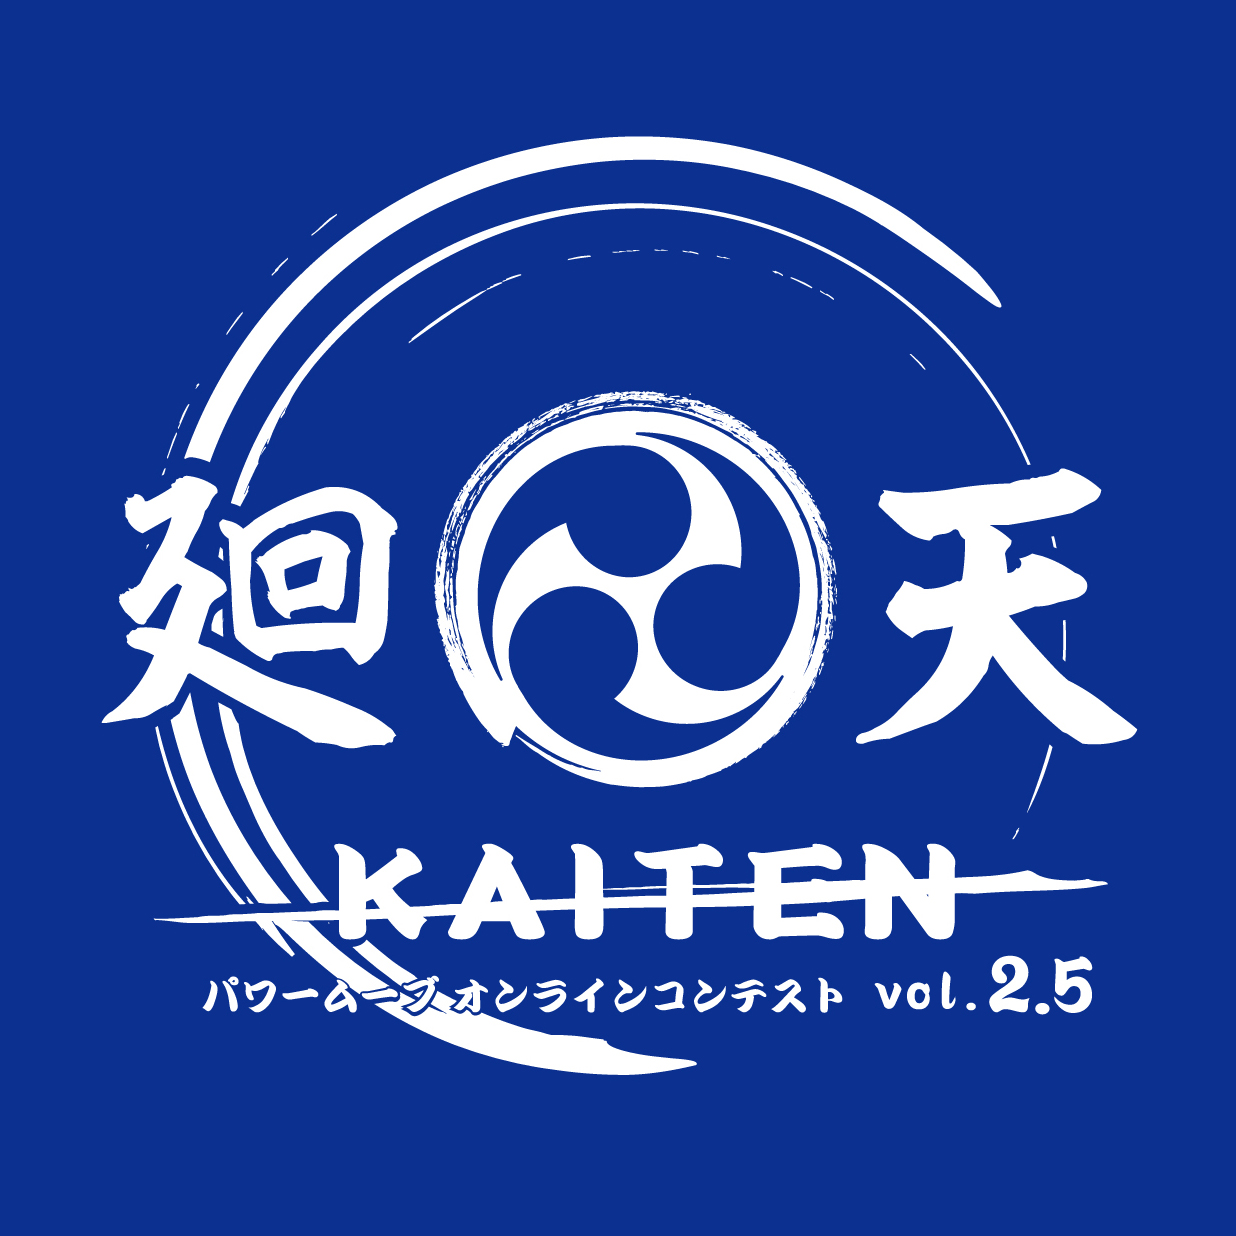 廻天 KAITEN パワームーブオンラインコンテスト vol.2.5